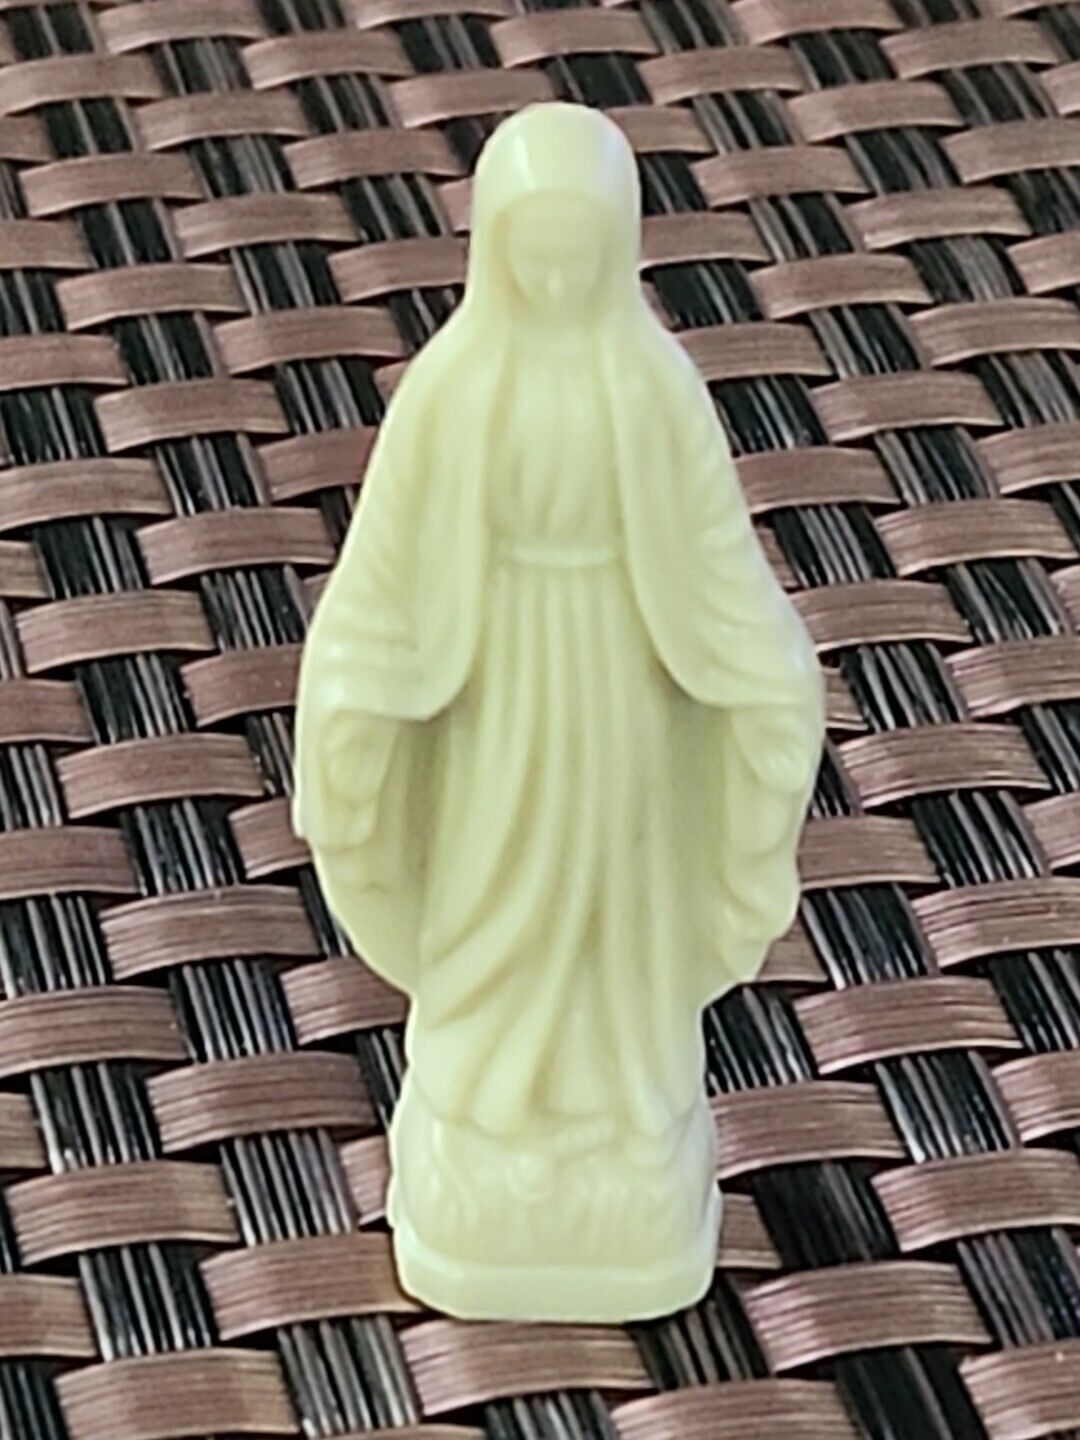 Vintage Celluloid Plastic Virgin Mary Madonna Figurine Statue 2” Mid Century